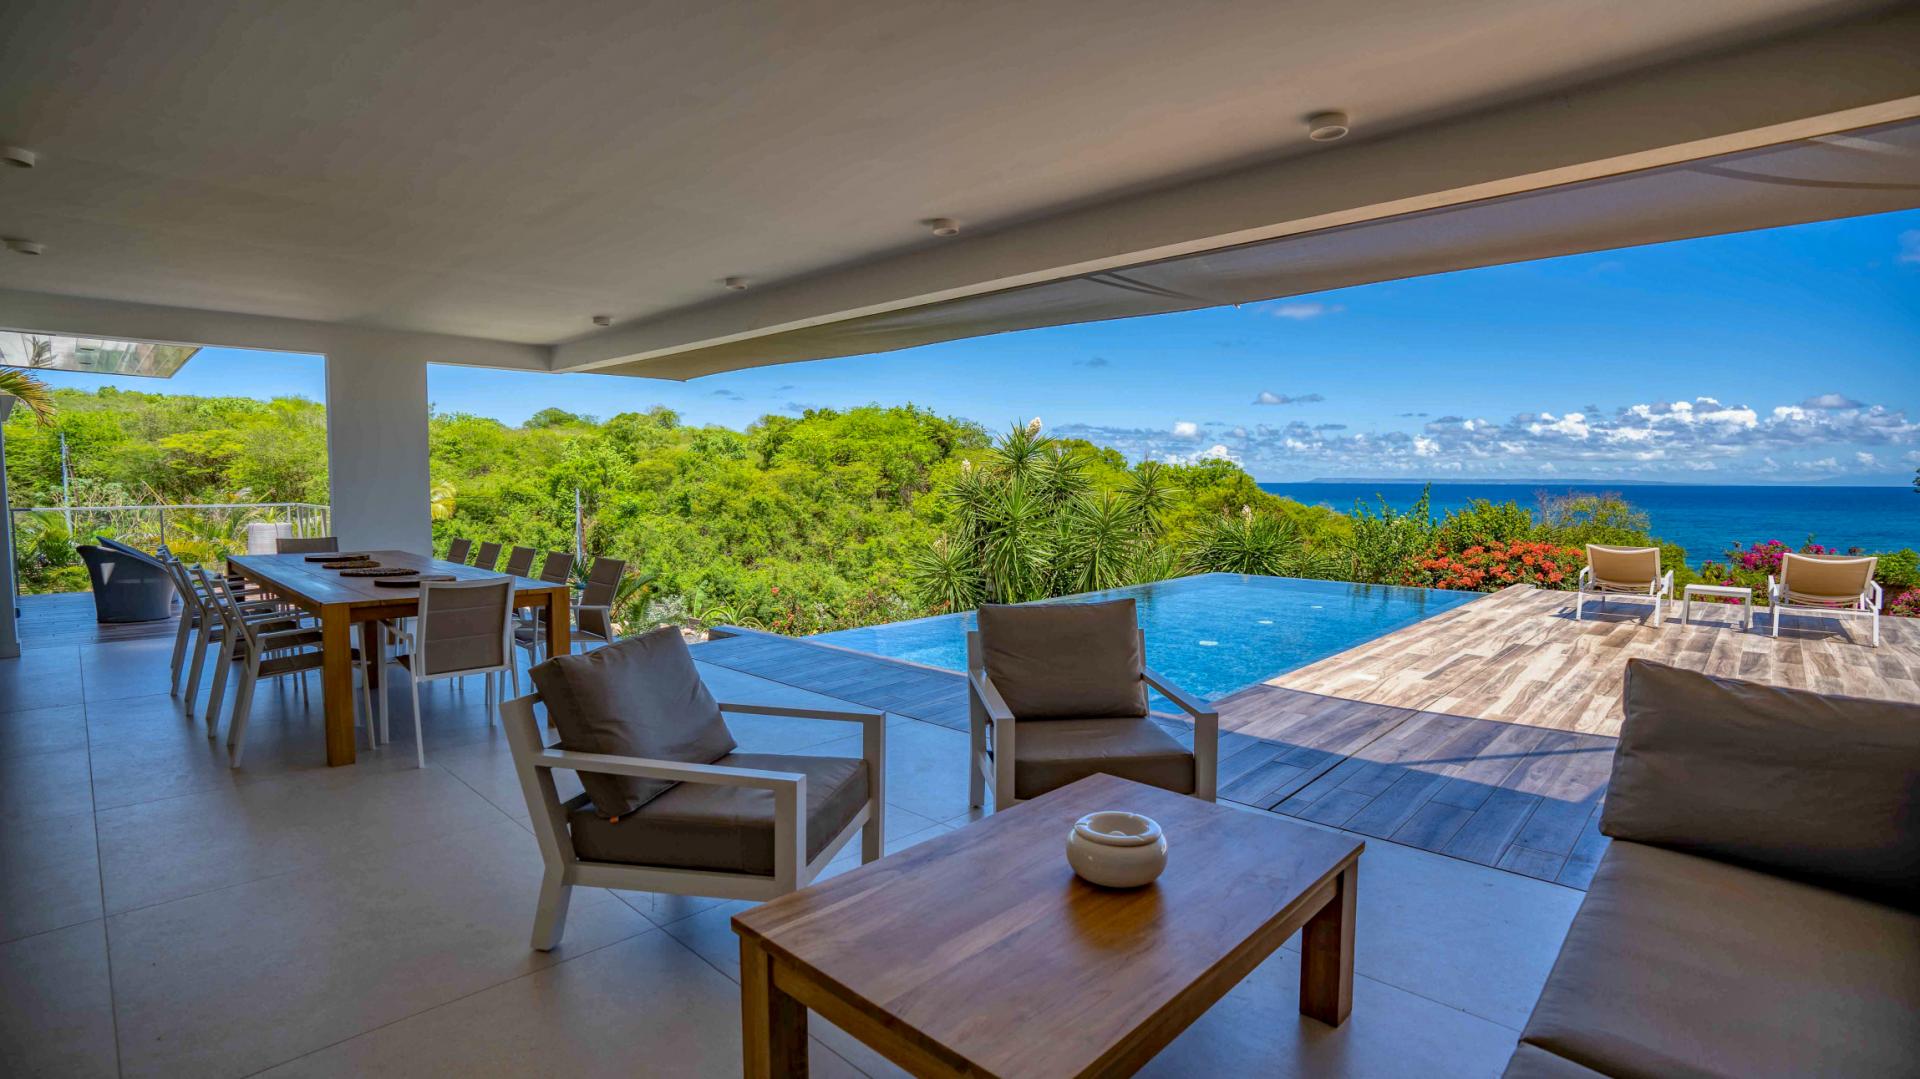 Location maison Guadeloupe - Saint François villa luxe 4 chambres 8 personnes avec piscine